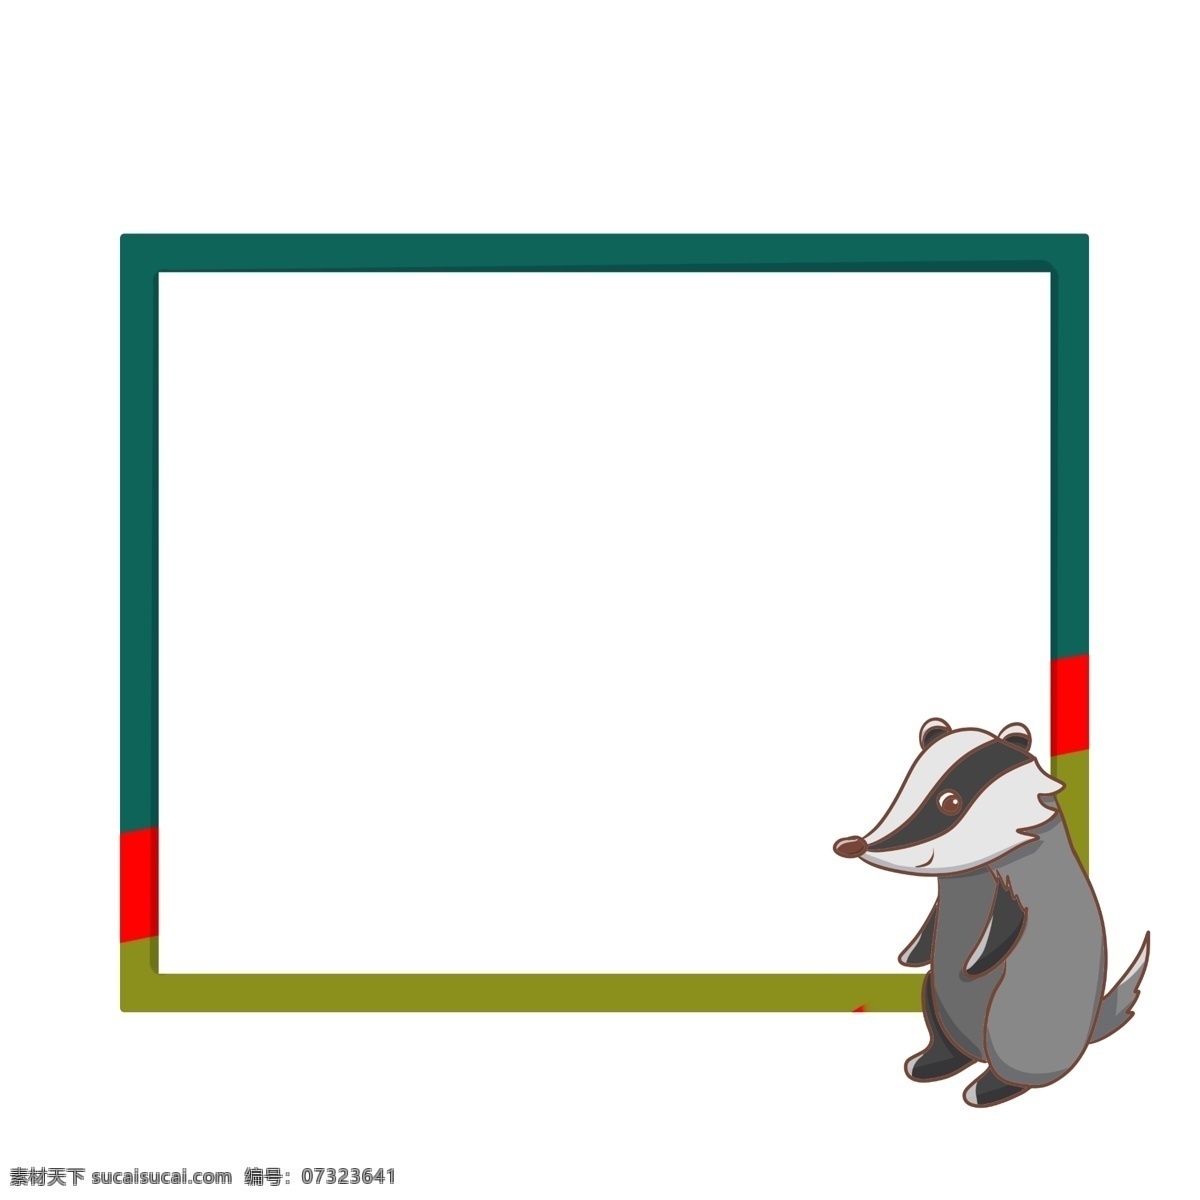 手绘 动物 果子狸 边框 可爱的果子狸 绿色的边框 漂亮的边框 卡通边框 灰色的果子狸 手绘动物边框